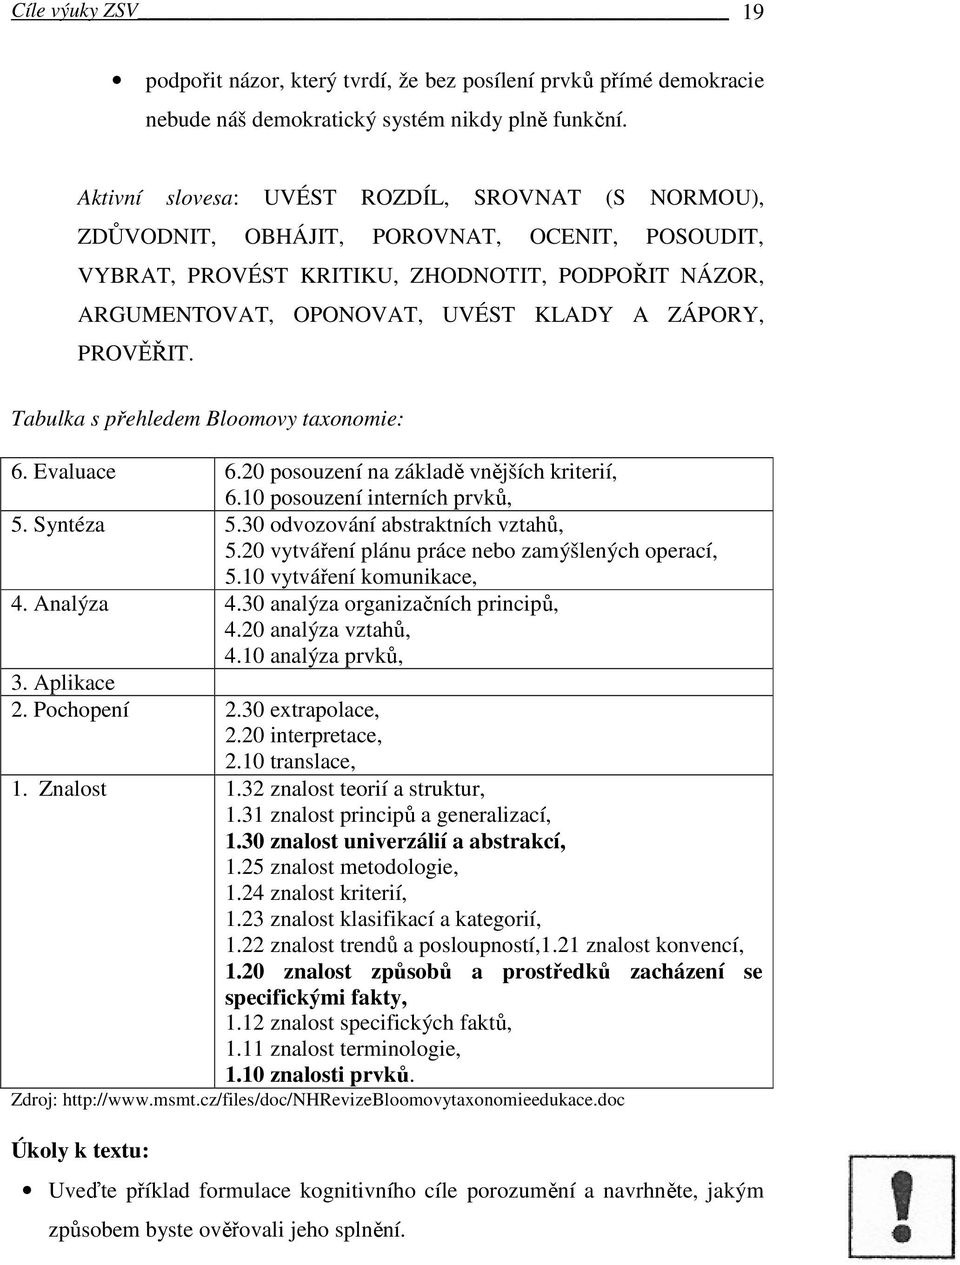 PROVĚŘIT. Tabulka s přehledem Bloomovy taxonomie: 6. Evaluace 6.20 posouzení na základě vnějších kriterií, 6.10 posouzení interních prvků, 5. Syntéza 5.30 odvozování abstraktních vztahů, 5.